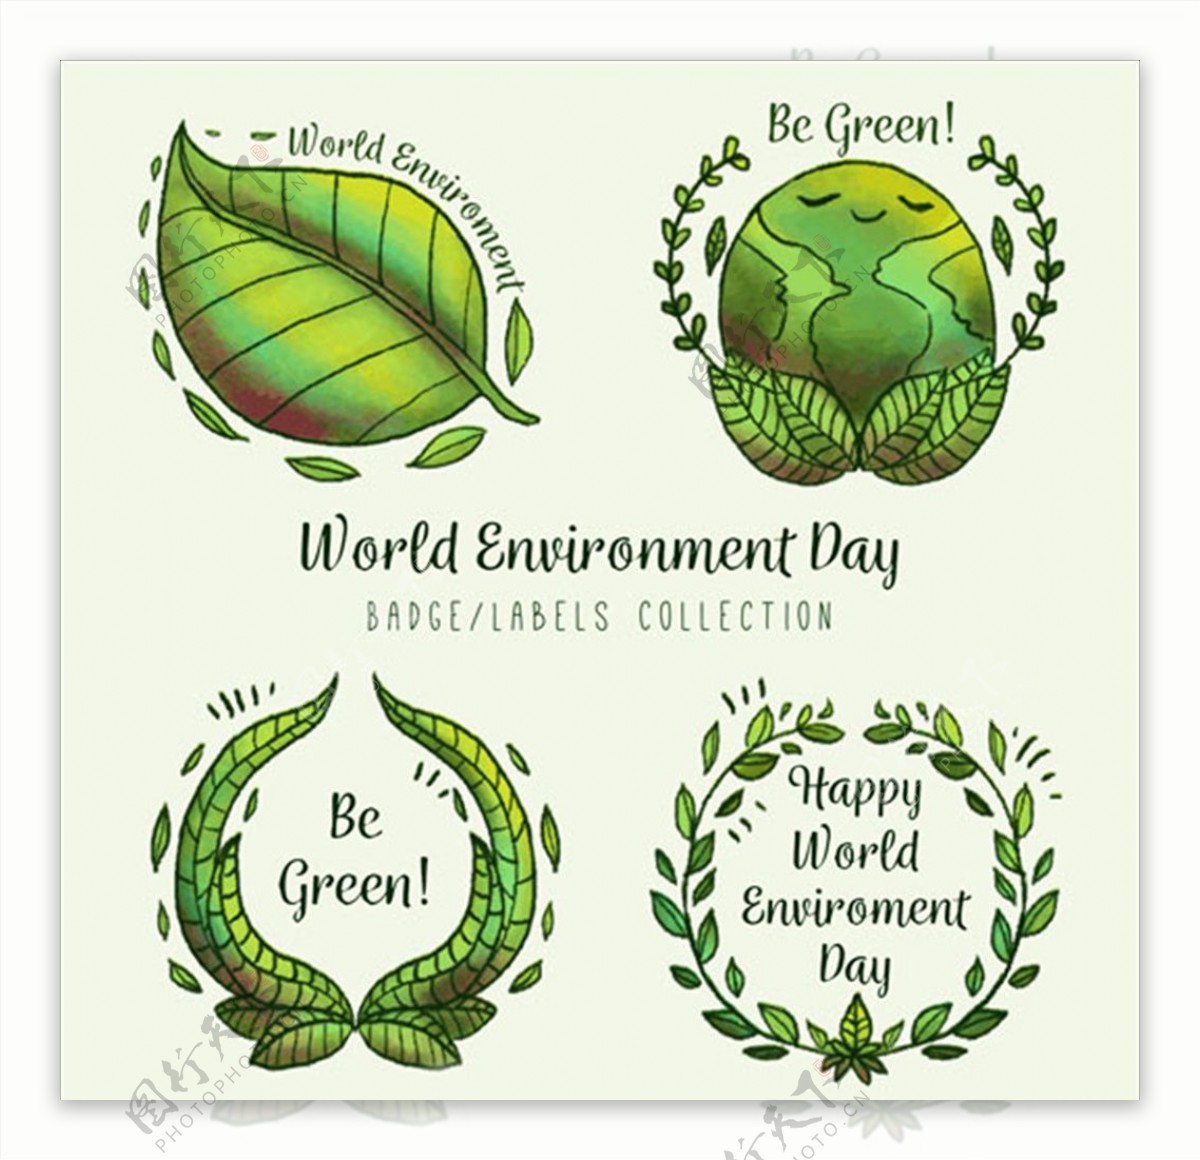 世界环境保护日标识